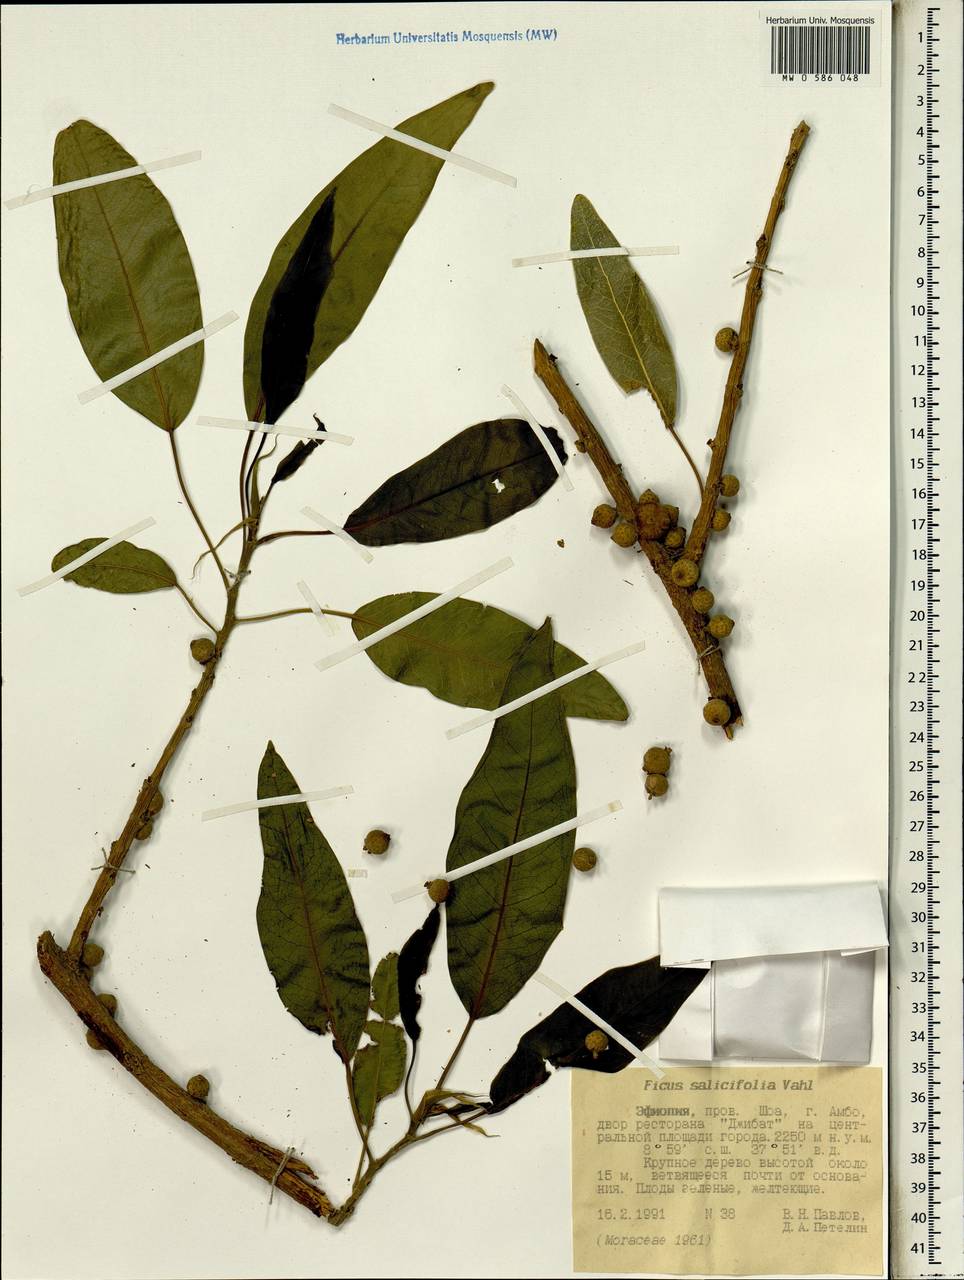 Ficus cordata subsp. salicifolia (Vahl) C. C. Berg, Africa (AFR) (Ethiopia)